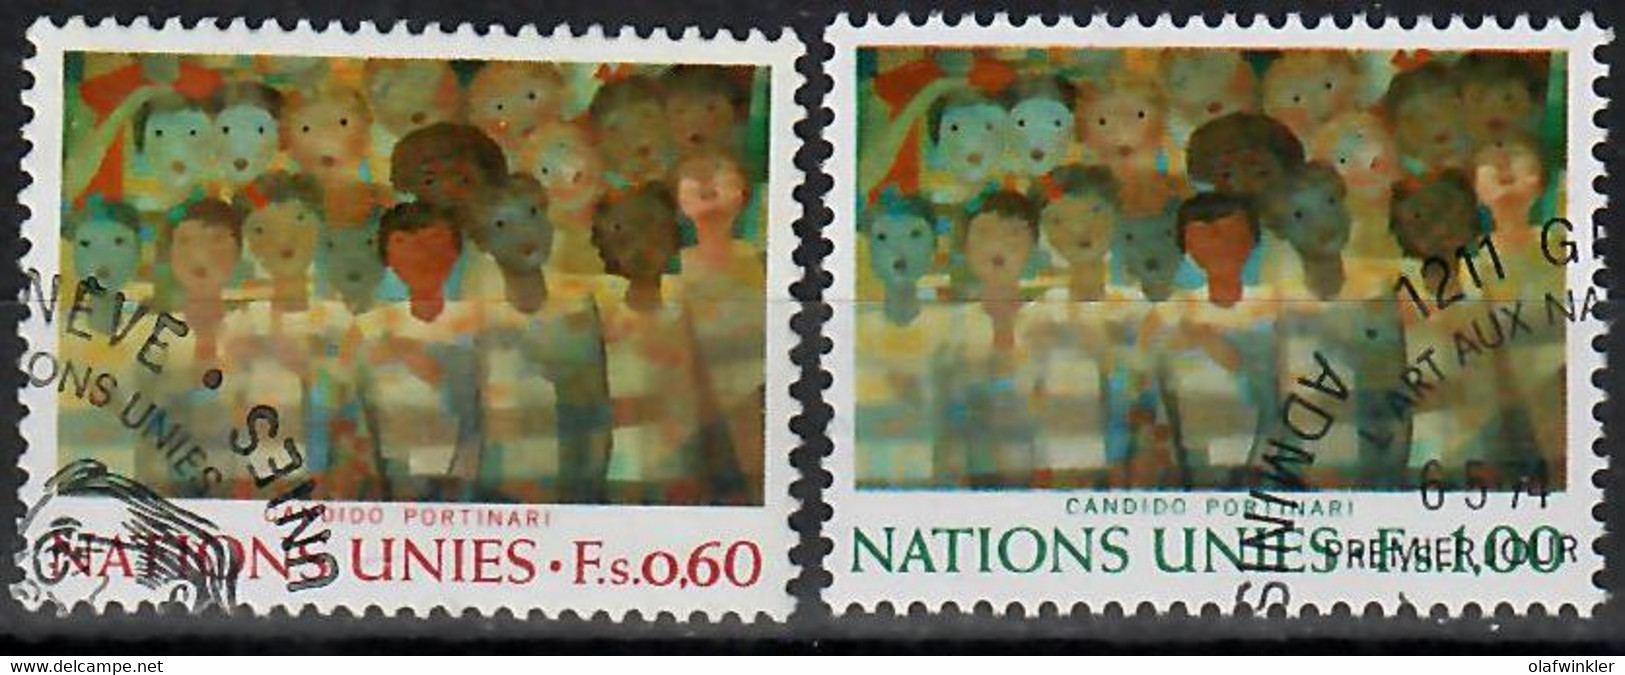 1974 L'art Aux Nations Unies (II) Zum 41-42 / Mi 41-42 / YT 41-42 / Sc 41-42 Oblitéré / Gestempelt /used [zro] - Used Stamps